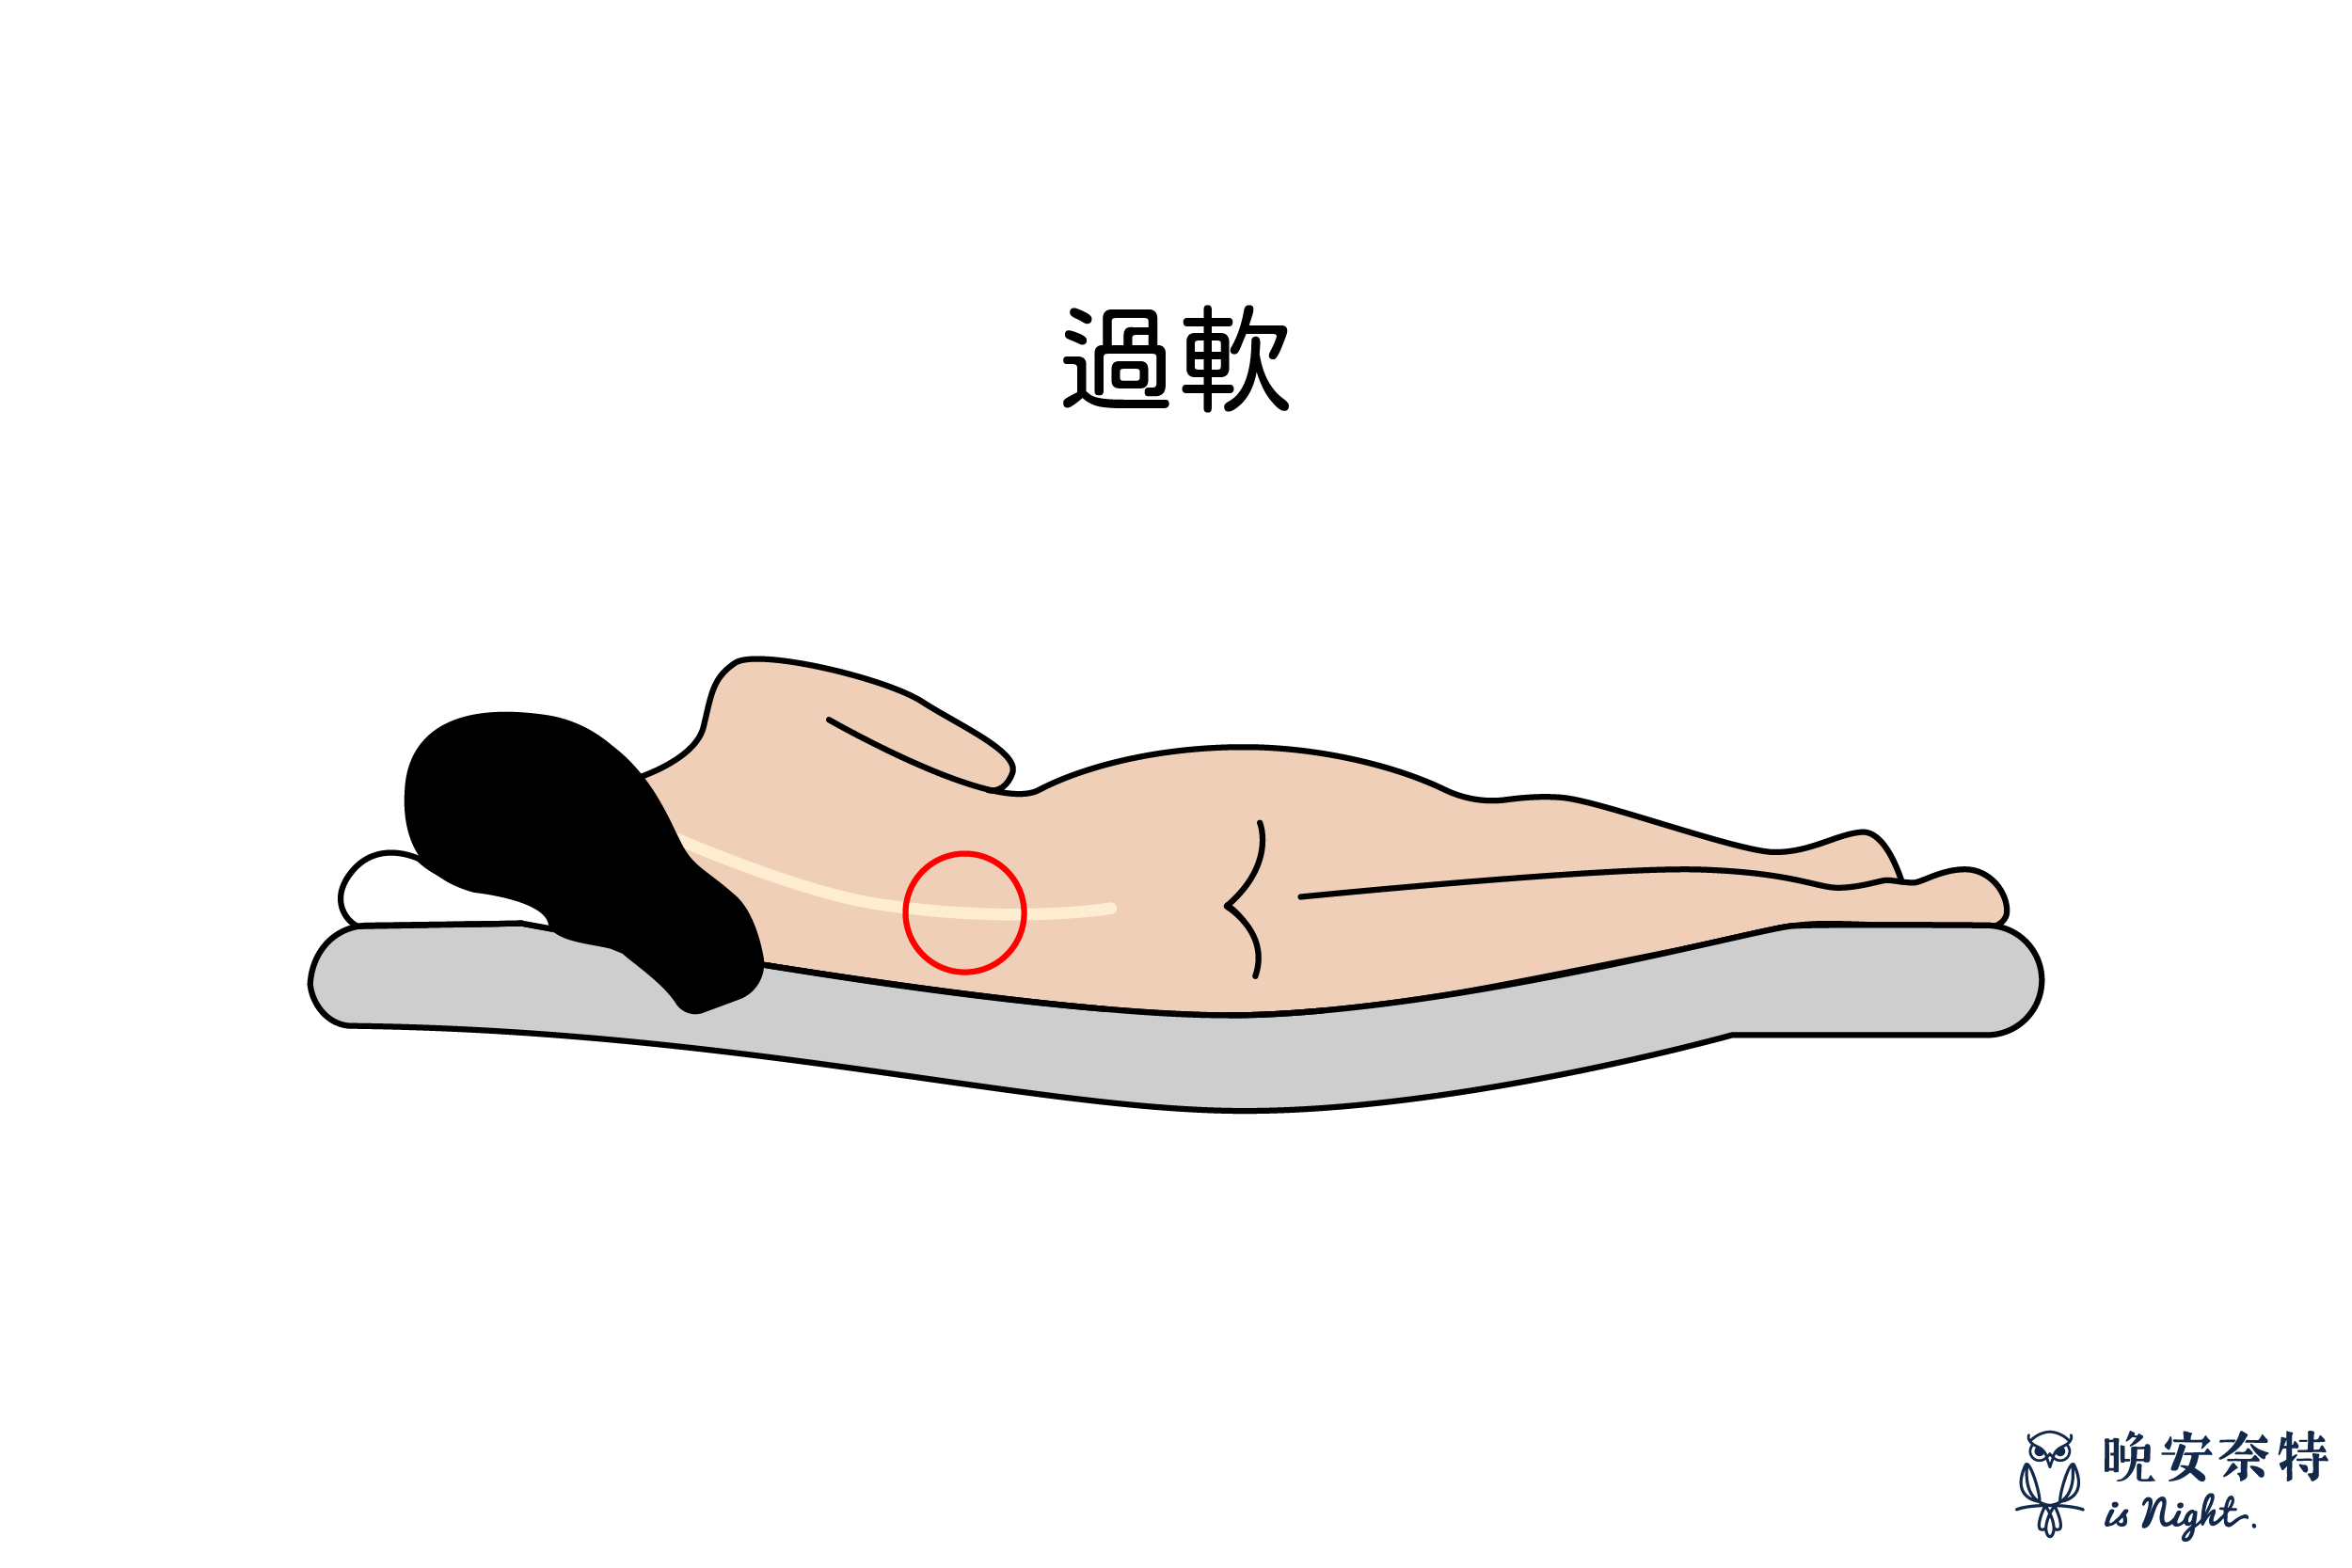 床墊軟硬度：床墊過軟，若缺乏支撐度，很容易導致腰痠背痛以及脊椎損害。